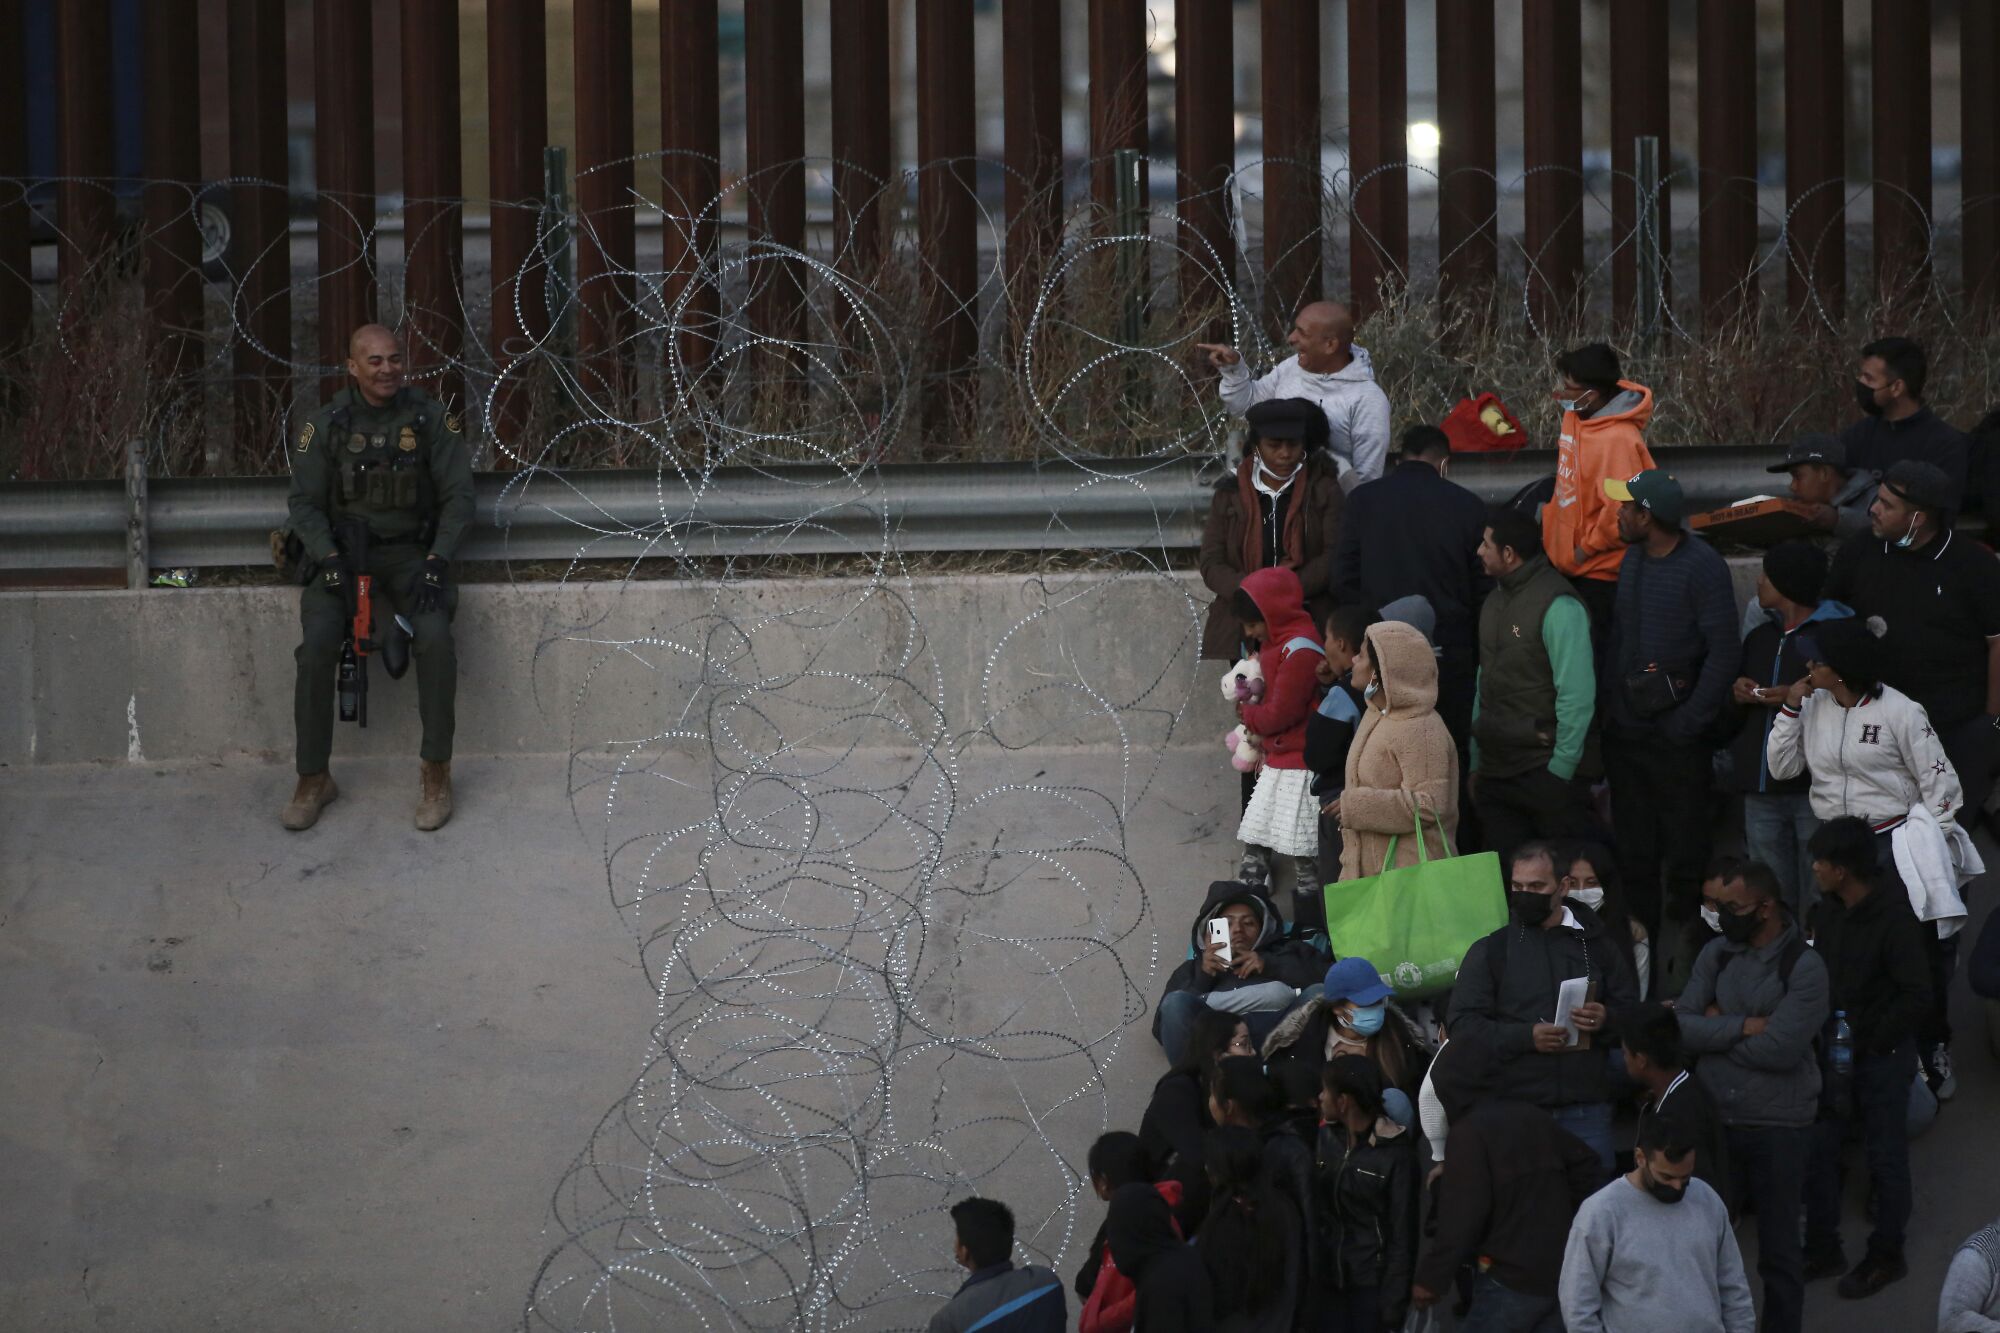 Göçmenler, El Paso, Teksas'a geçmelerini engellemek için dikenli tellerin arkasında duruyor